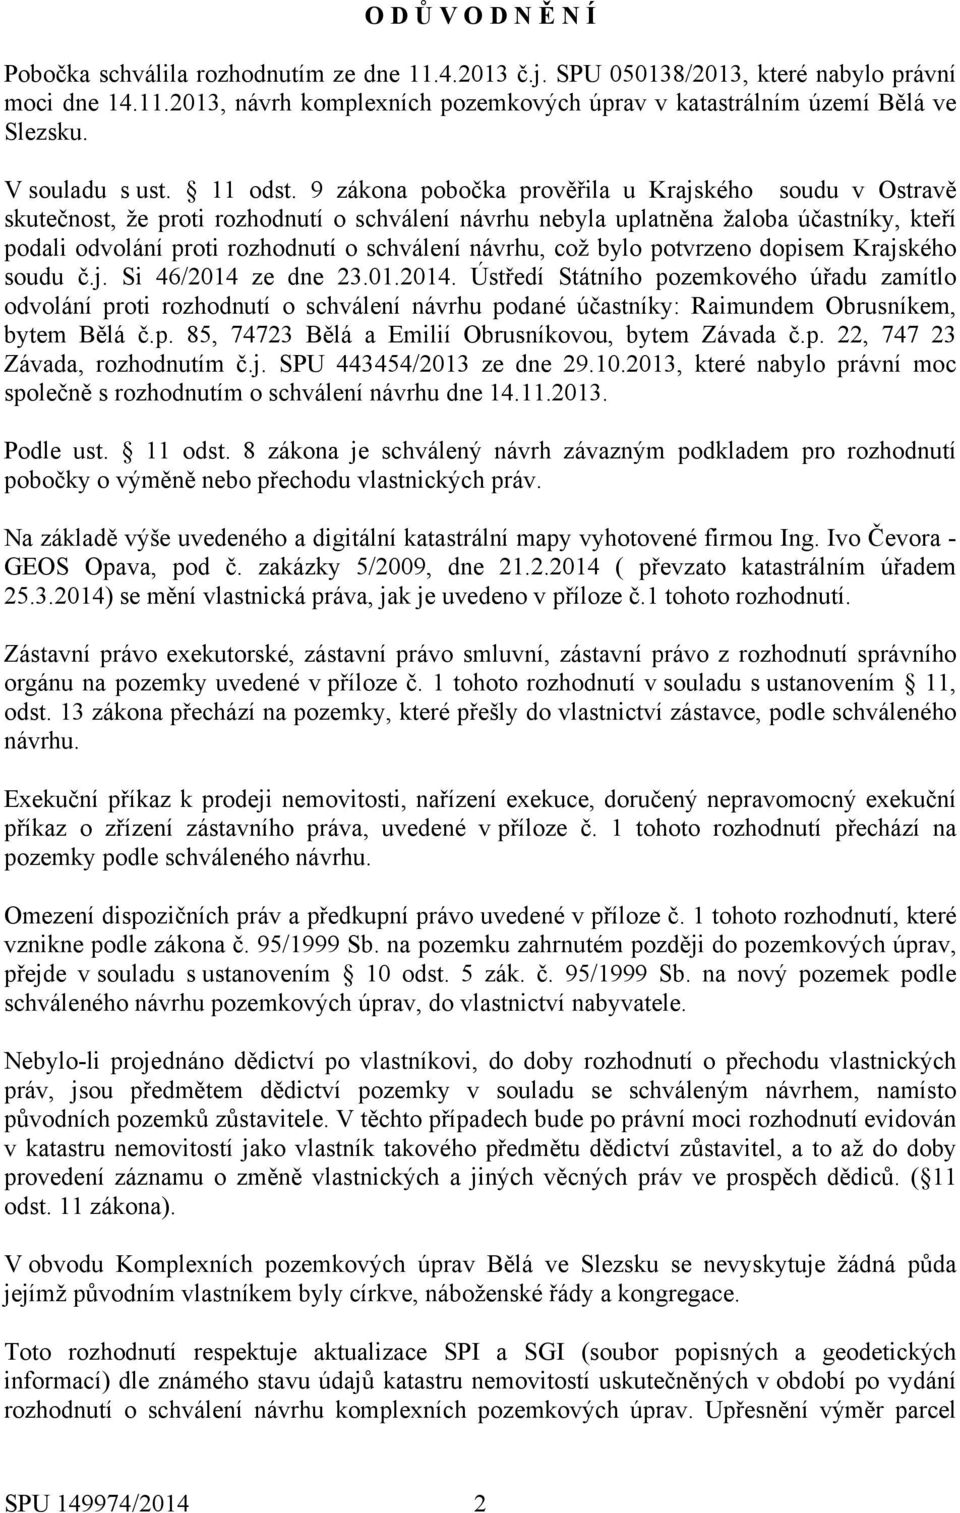 9 zákona pobočka prověřila u Krajského soudu v Ostravě skutečnost, že proti rozhodnutí o schválení návrhu nebyla uplatněna žaloba účastníky, kteří podali odvolání proti rozhodnutí o schválení návrhu,